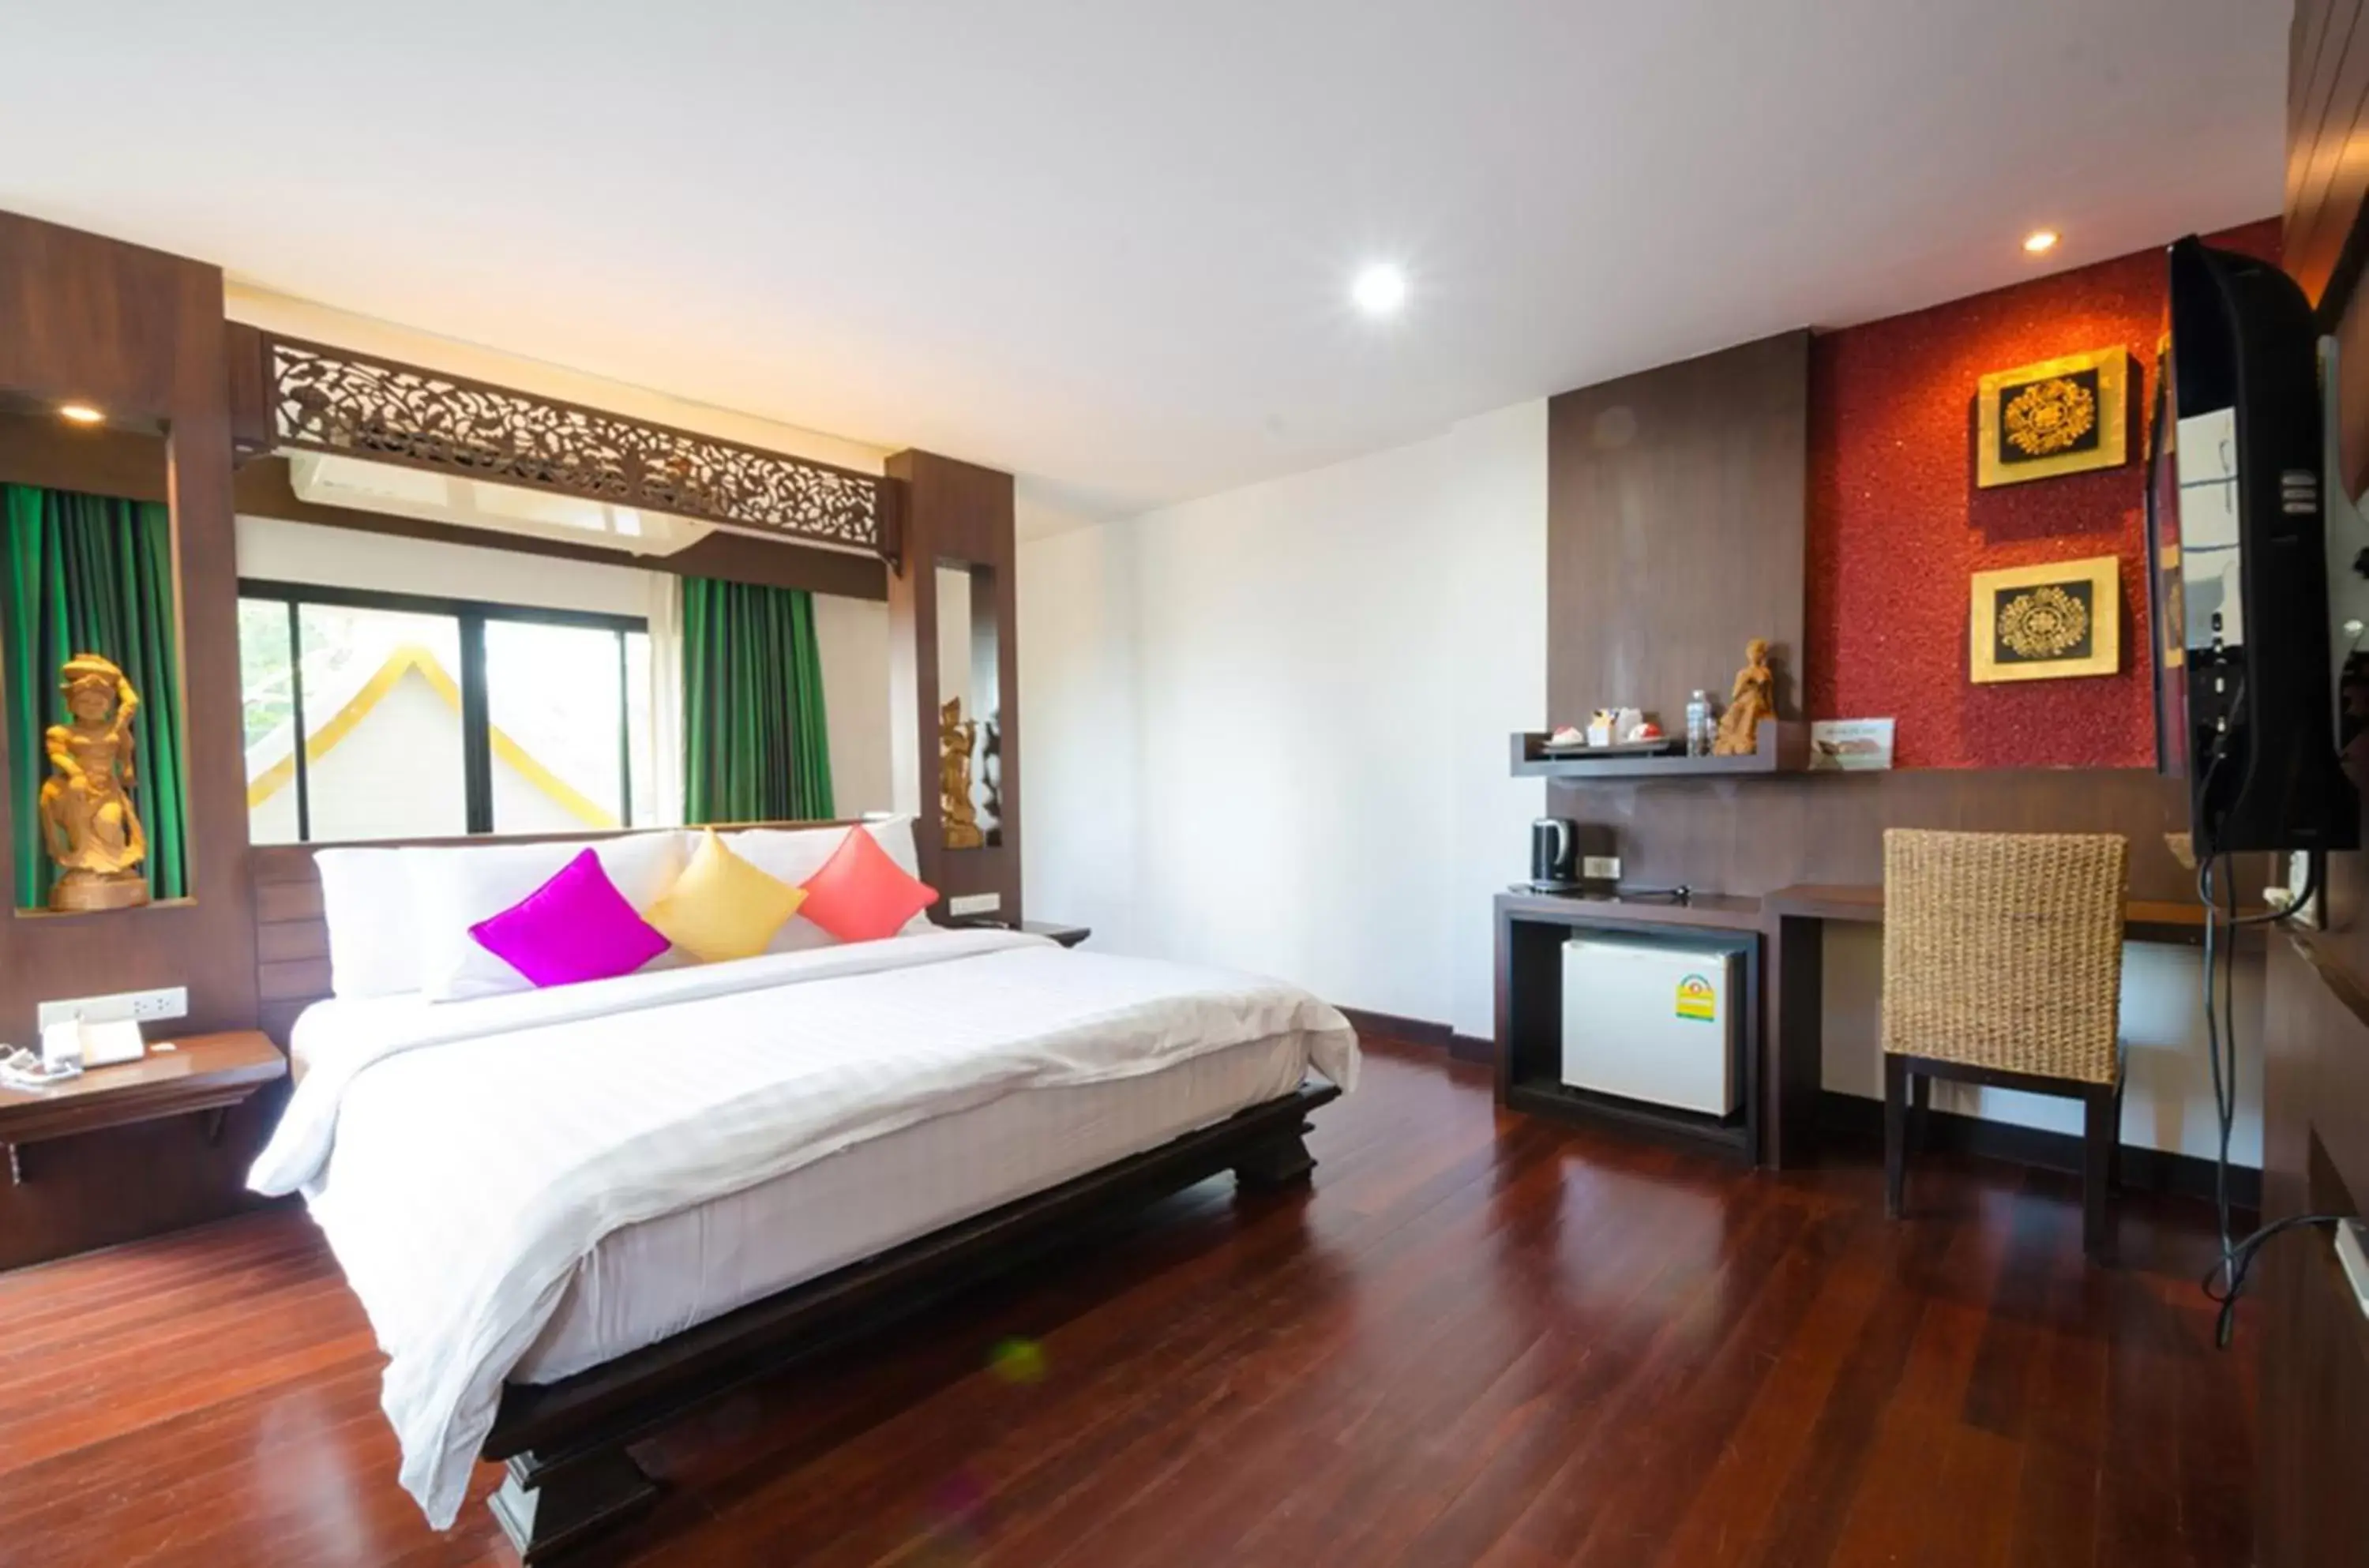 Bedroom, Room Photo in Nicha Suite Hua Hin Hotel